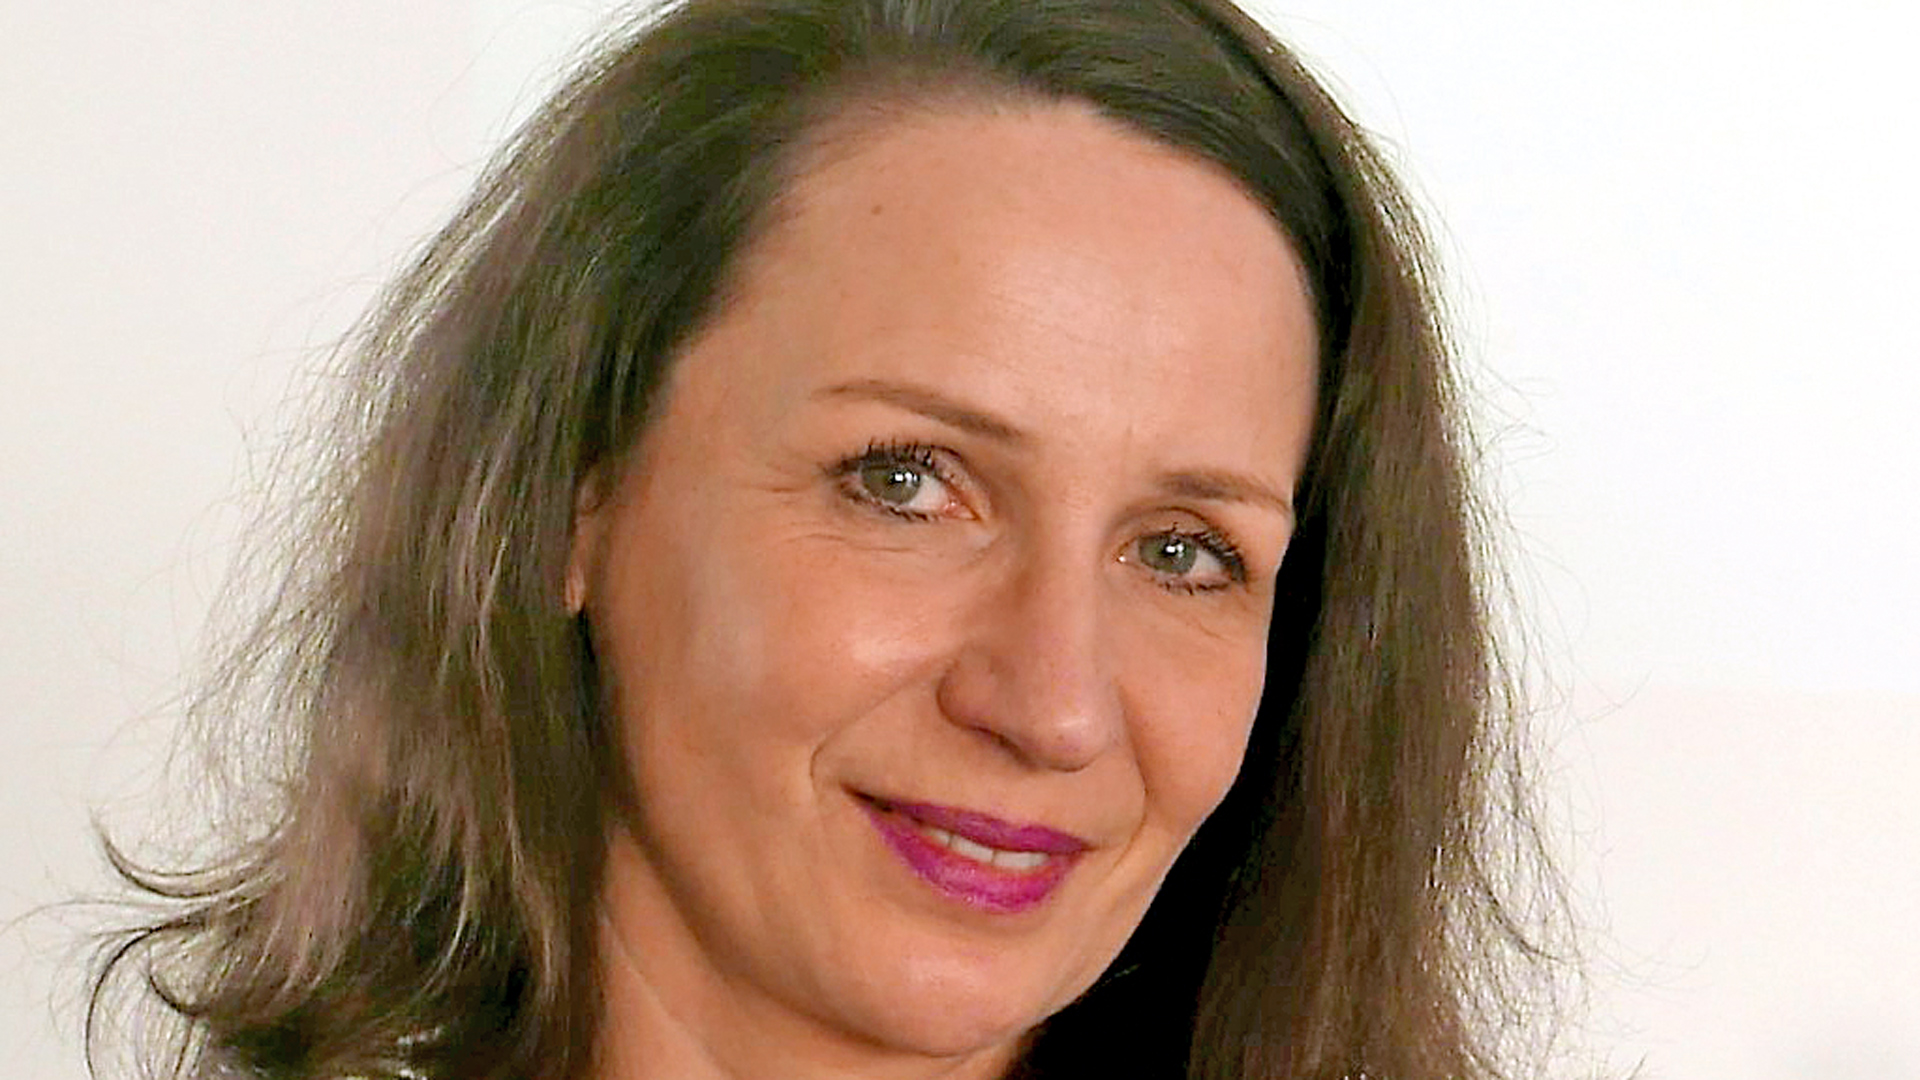 Claudia Becker arbeitet als Redakteurin für die Berliner Tageszeitung Die Welt. Die promovierte Historikerin ist verheiratet und Mutter von drei Kindern.